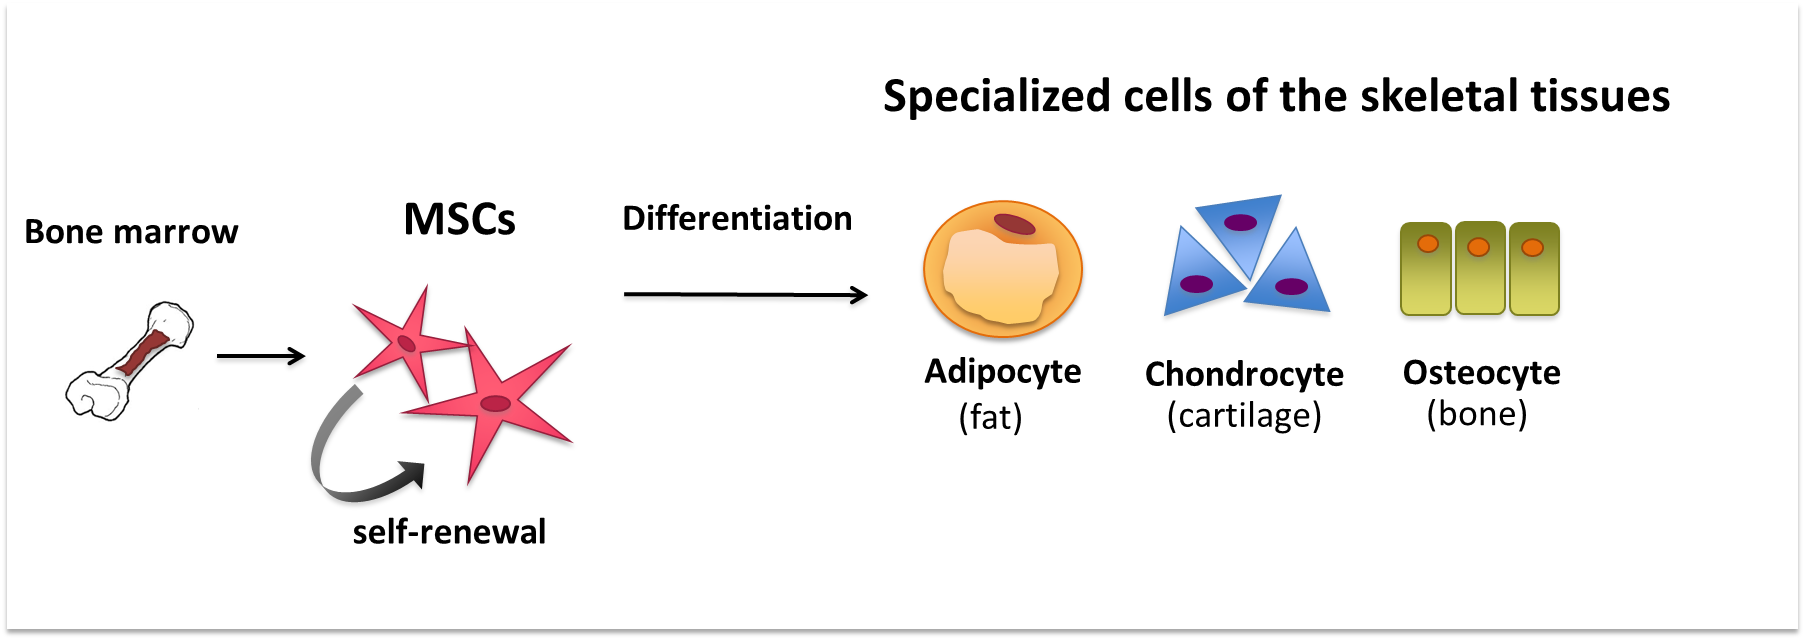 间充质干细胞分化